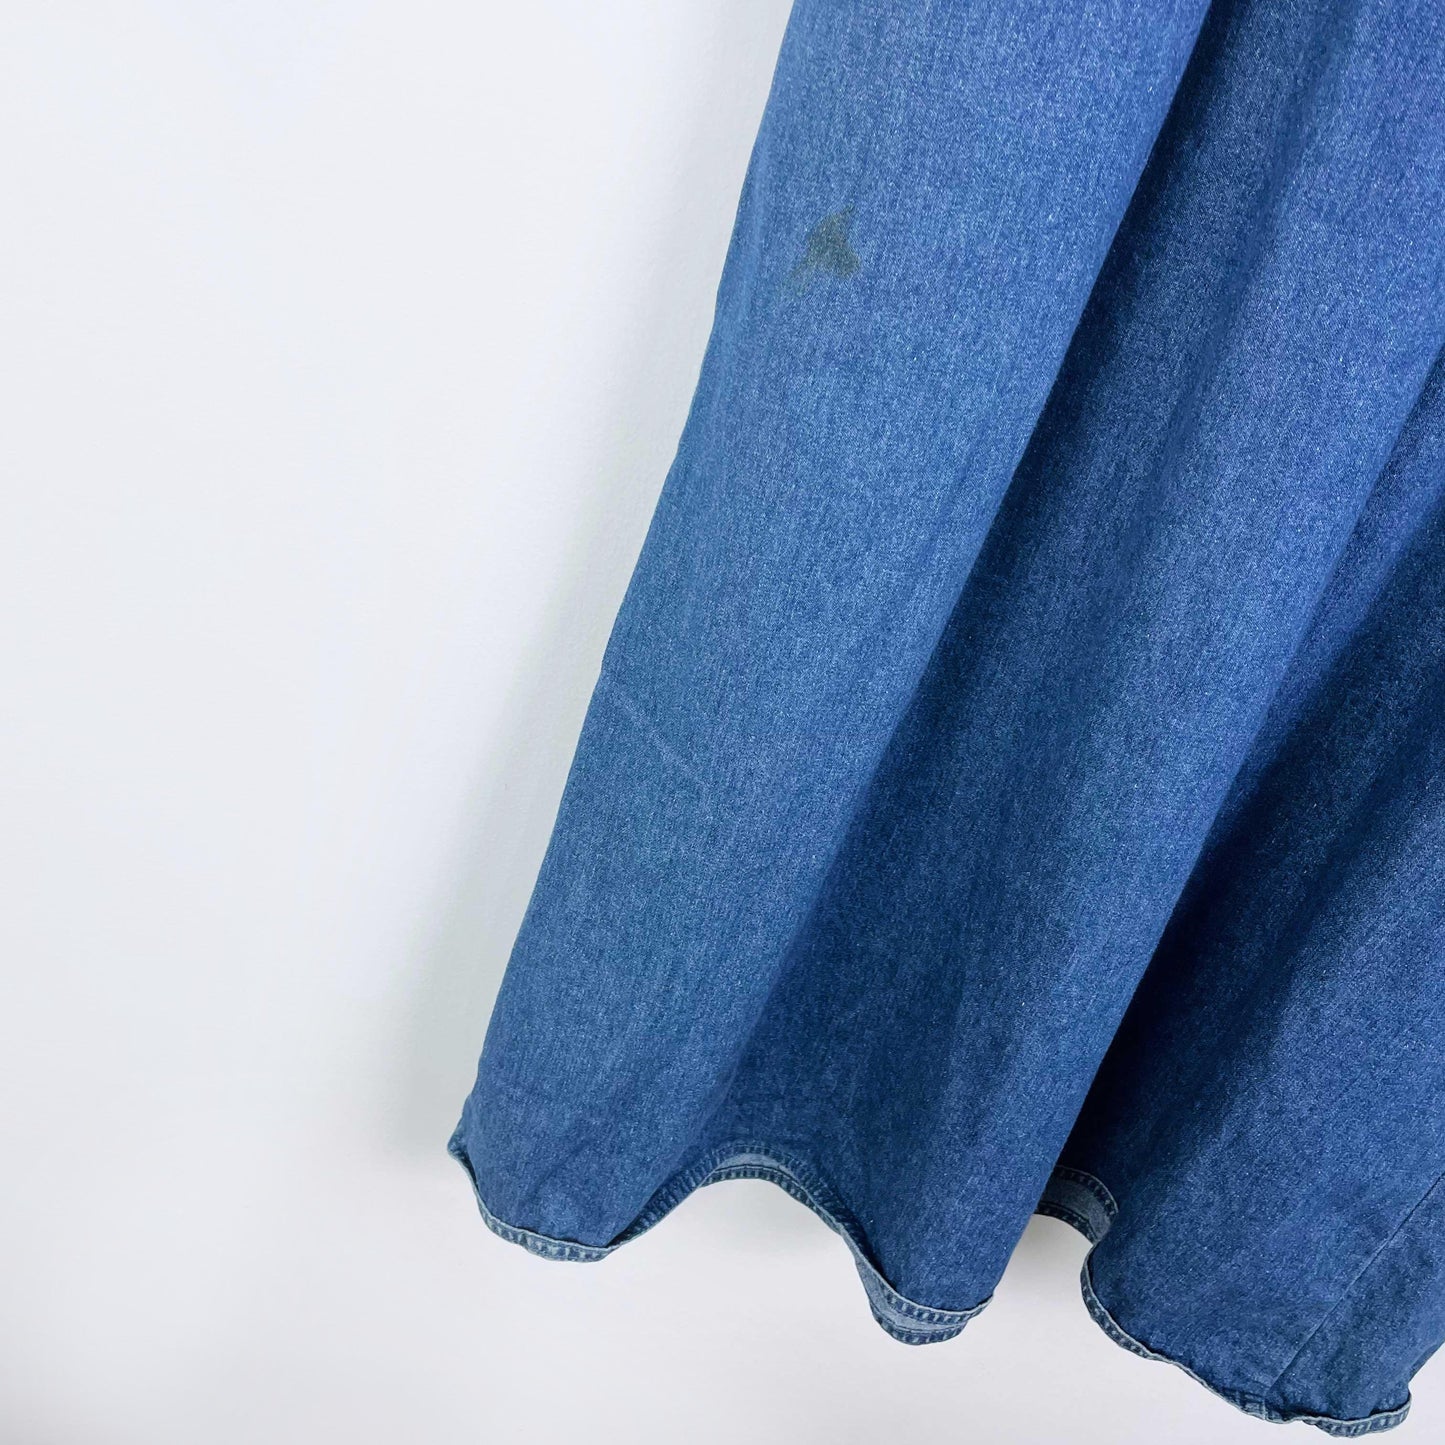 vintage woolrich denim overall jumper - size medium